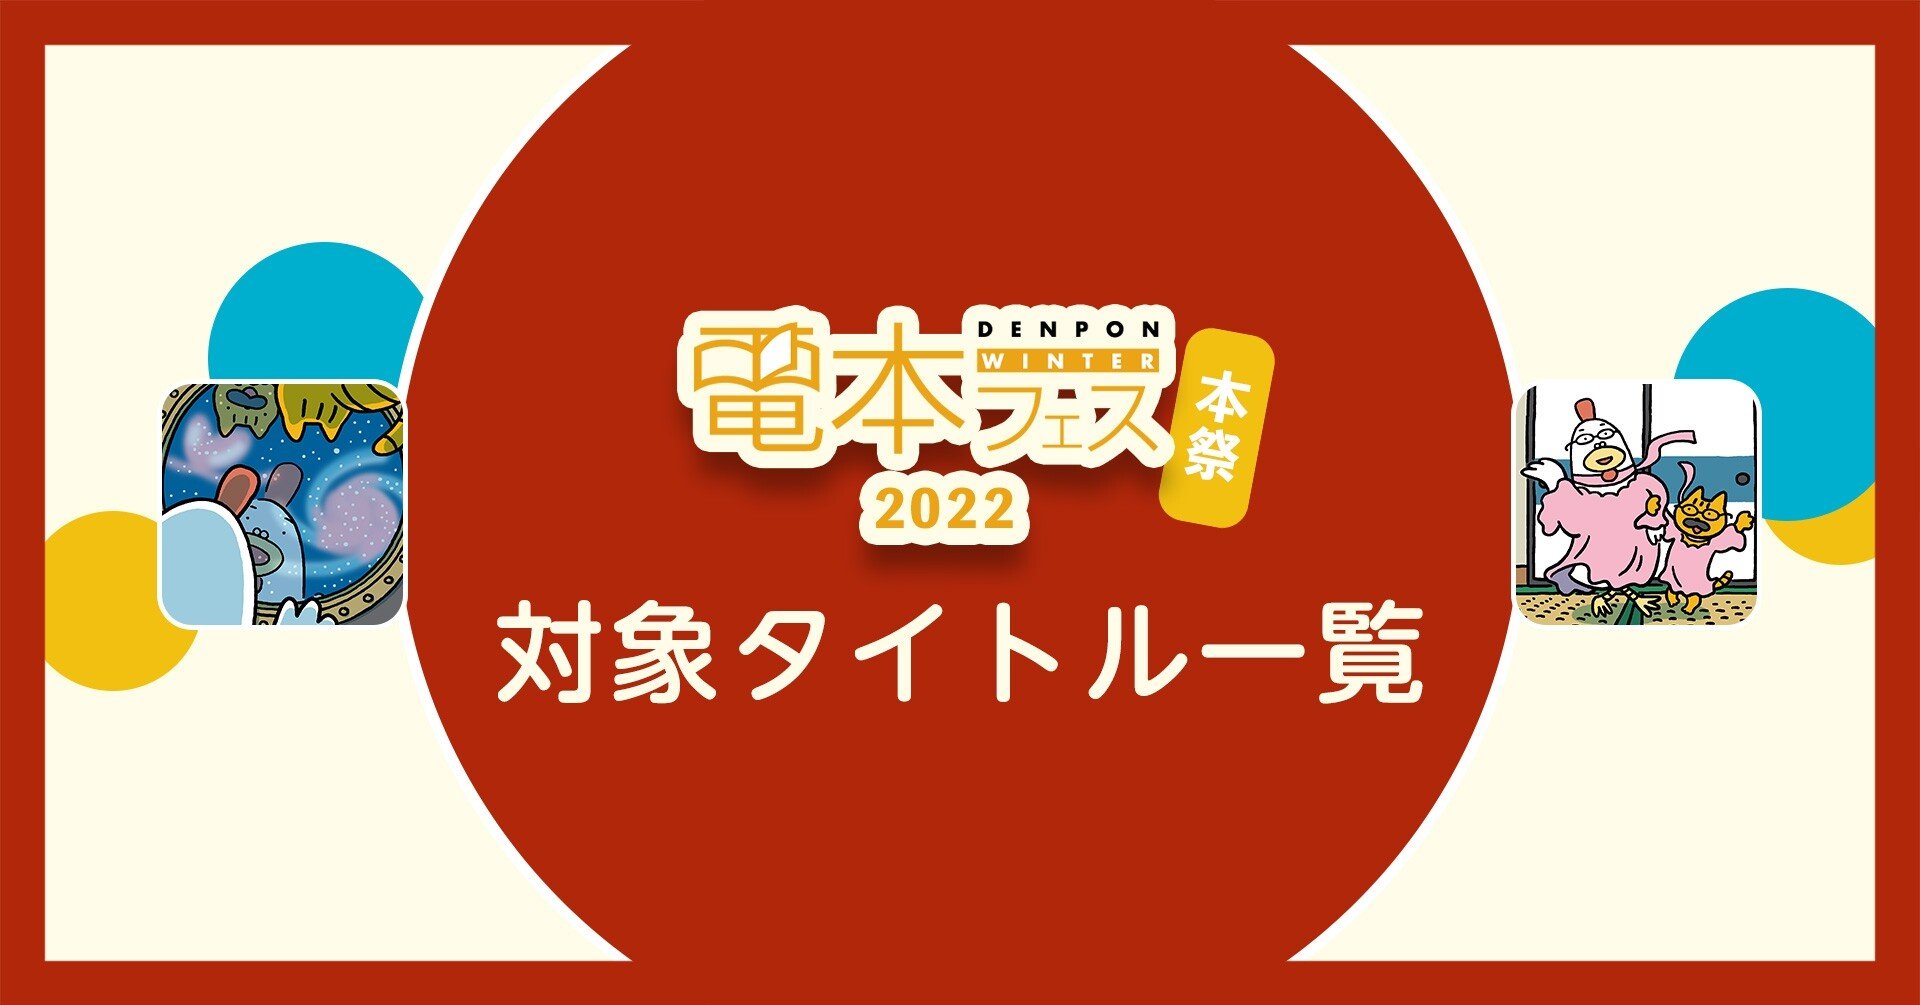 電本フェス 2022 WINTER【本祭】対象タイトル一覧｜幻冬舎 電子書籍｜note